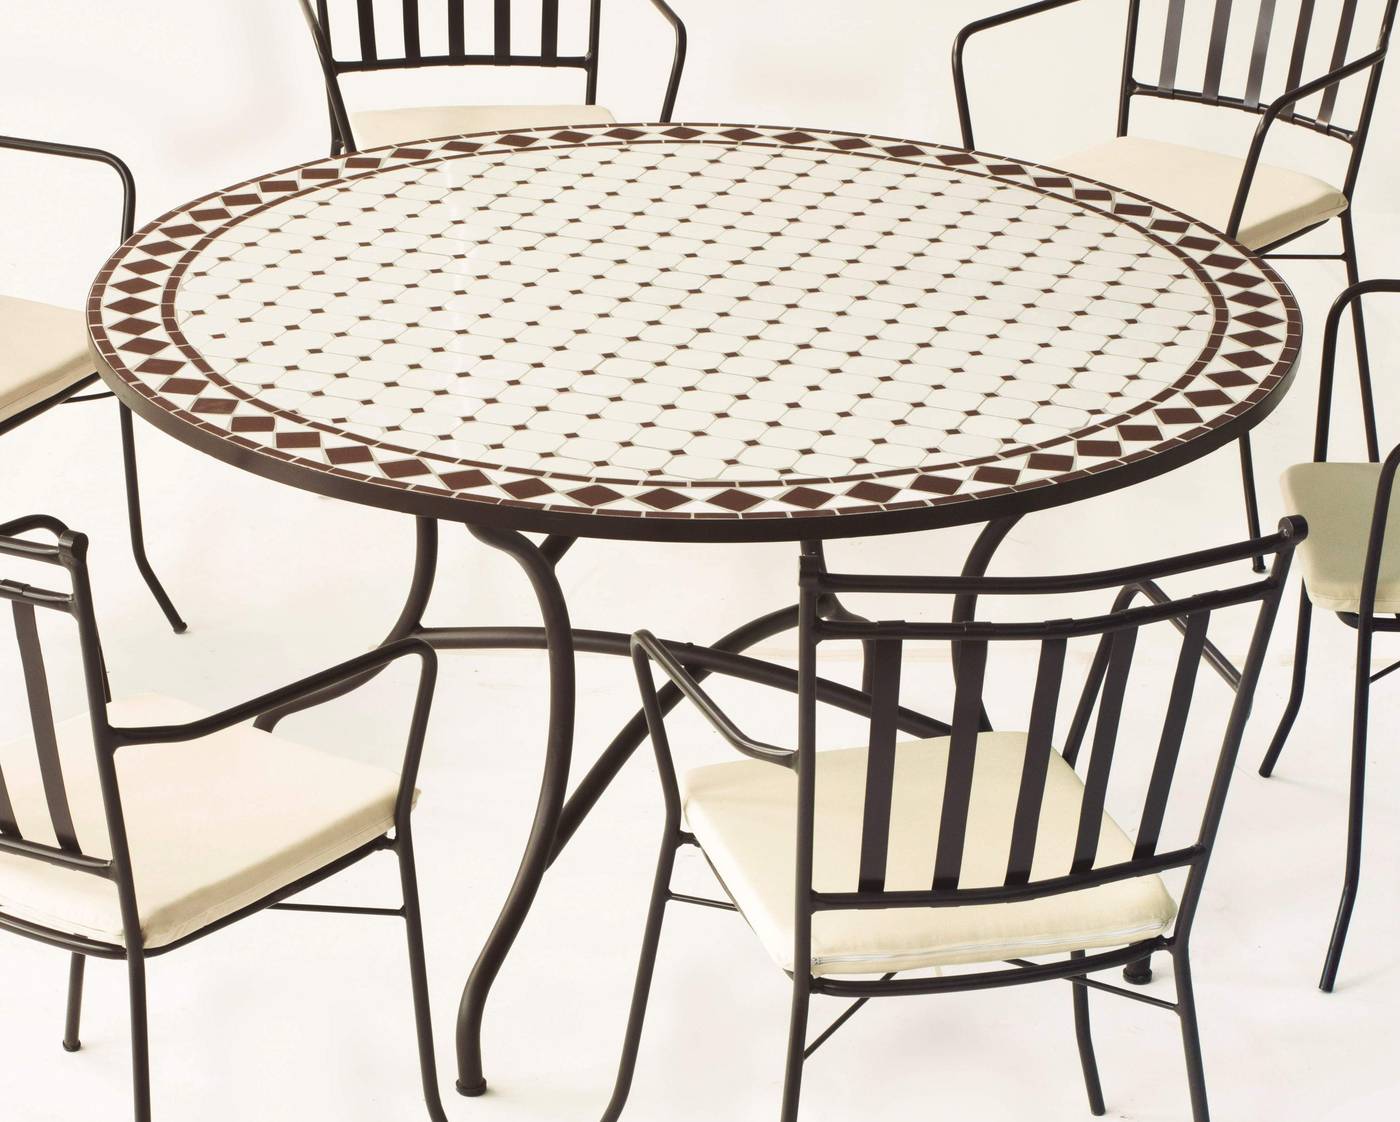 Conjunto Mosaico Zaira140-Bergamo - Conjunto de forja color marrón: mesa con tablero mosaico de 140 cm + 6 sillones de ratán sintético con cojines.